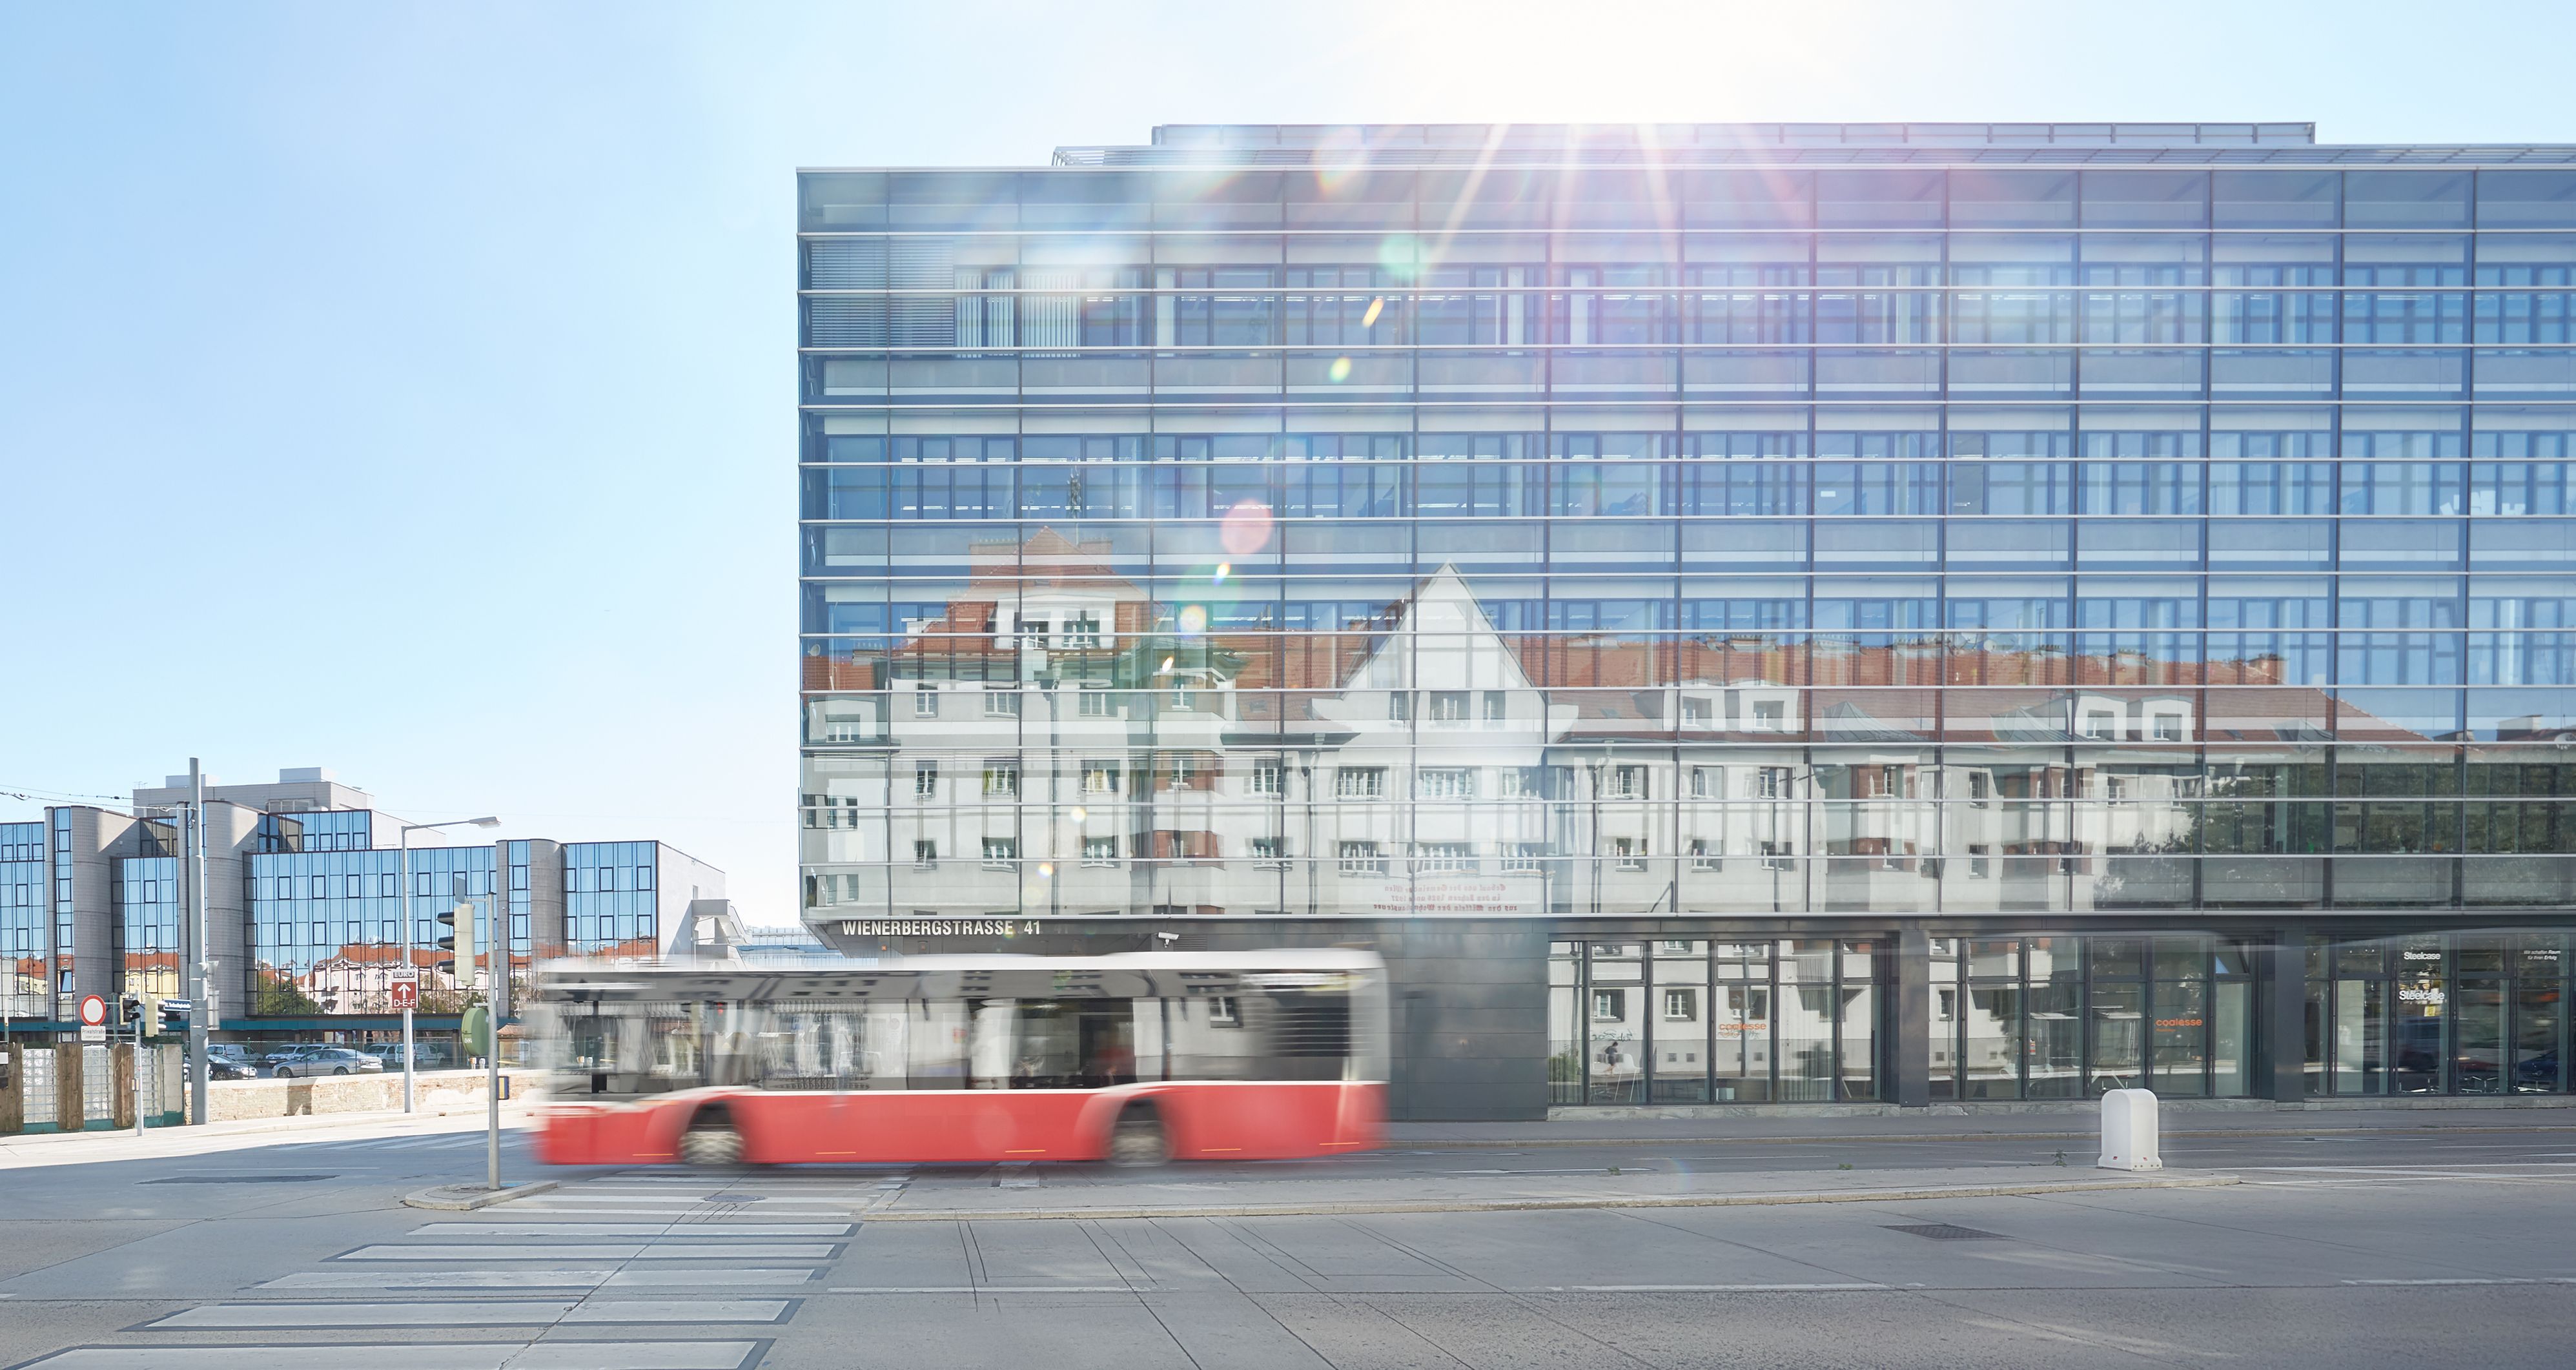 Foto: modernes Bürogebäude mit Glasfassade, in der sich ein gegenüberliegender Altbau spiegelt; davor ein öffentlicher Autobus